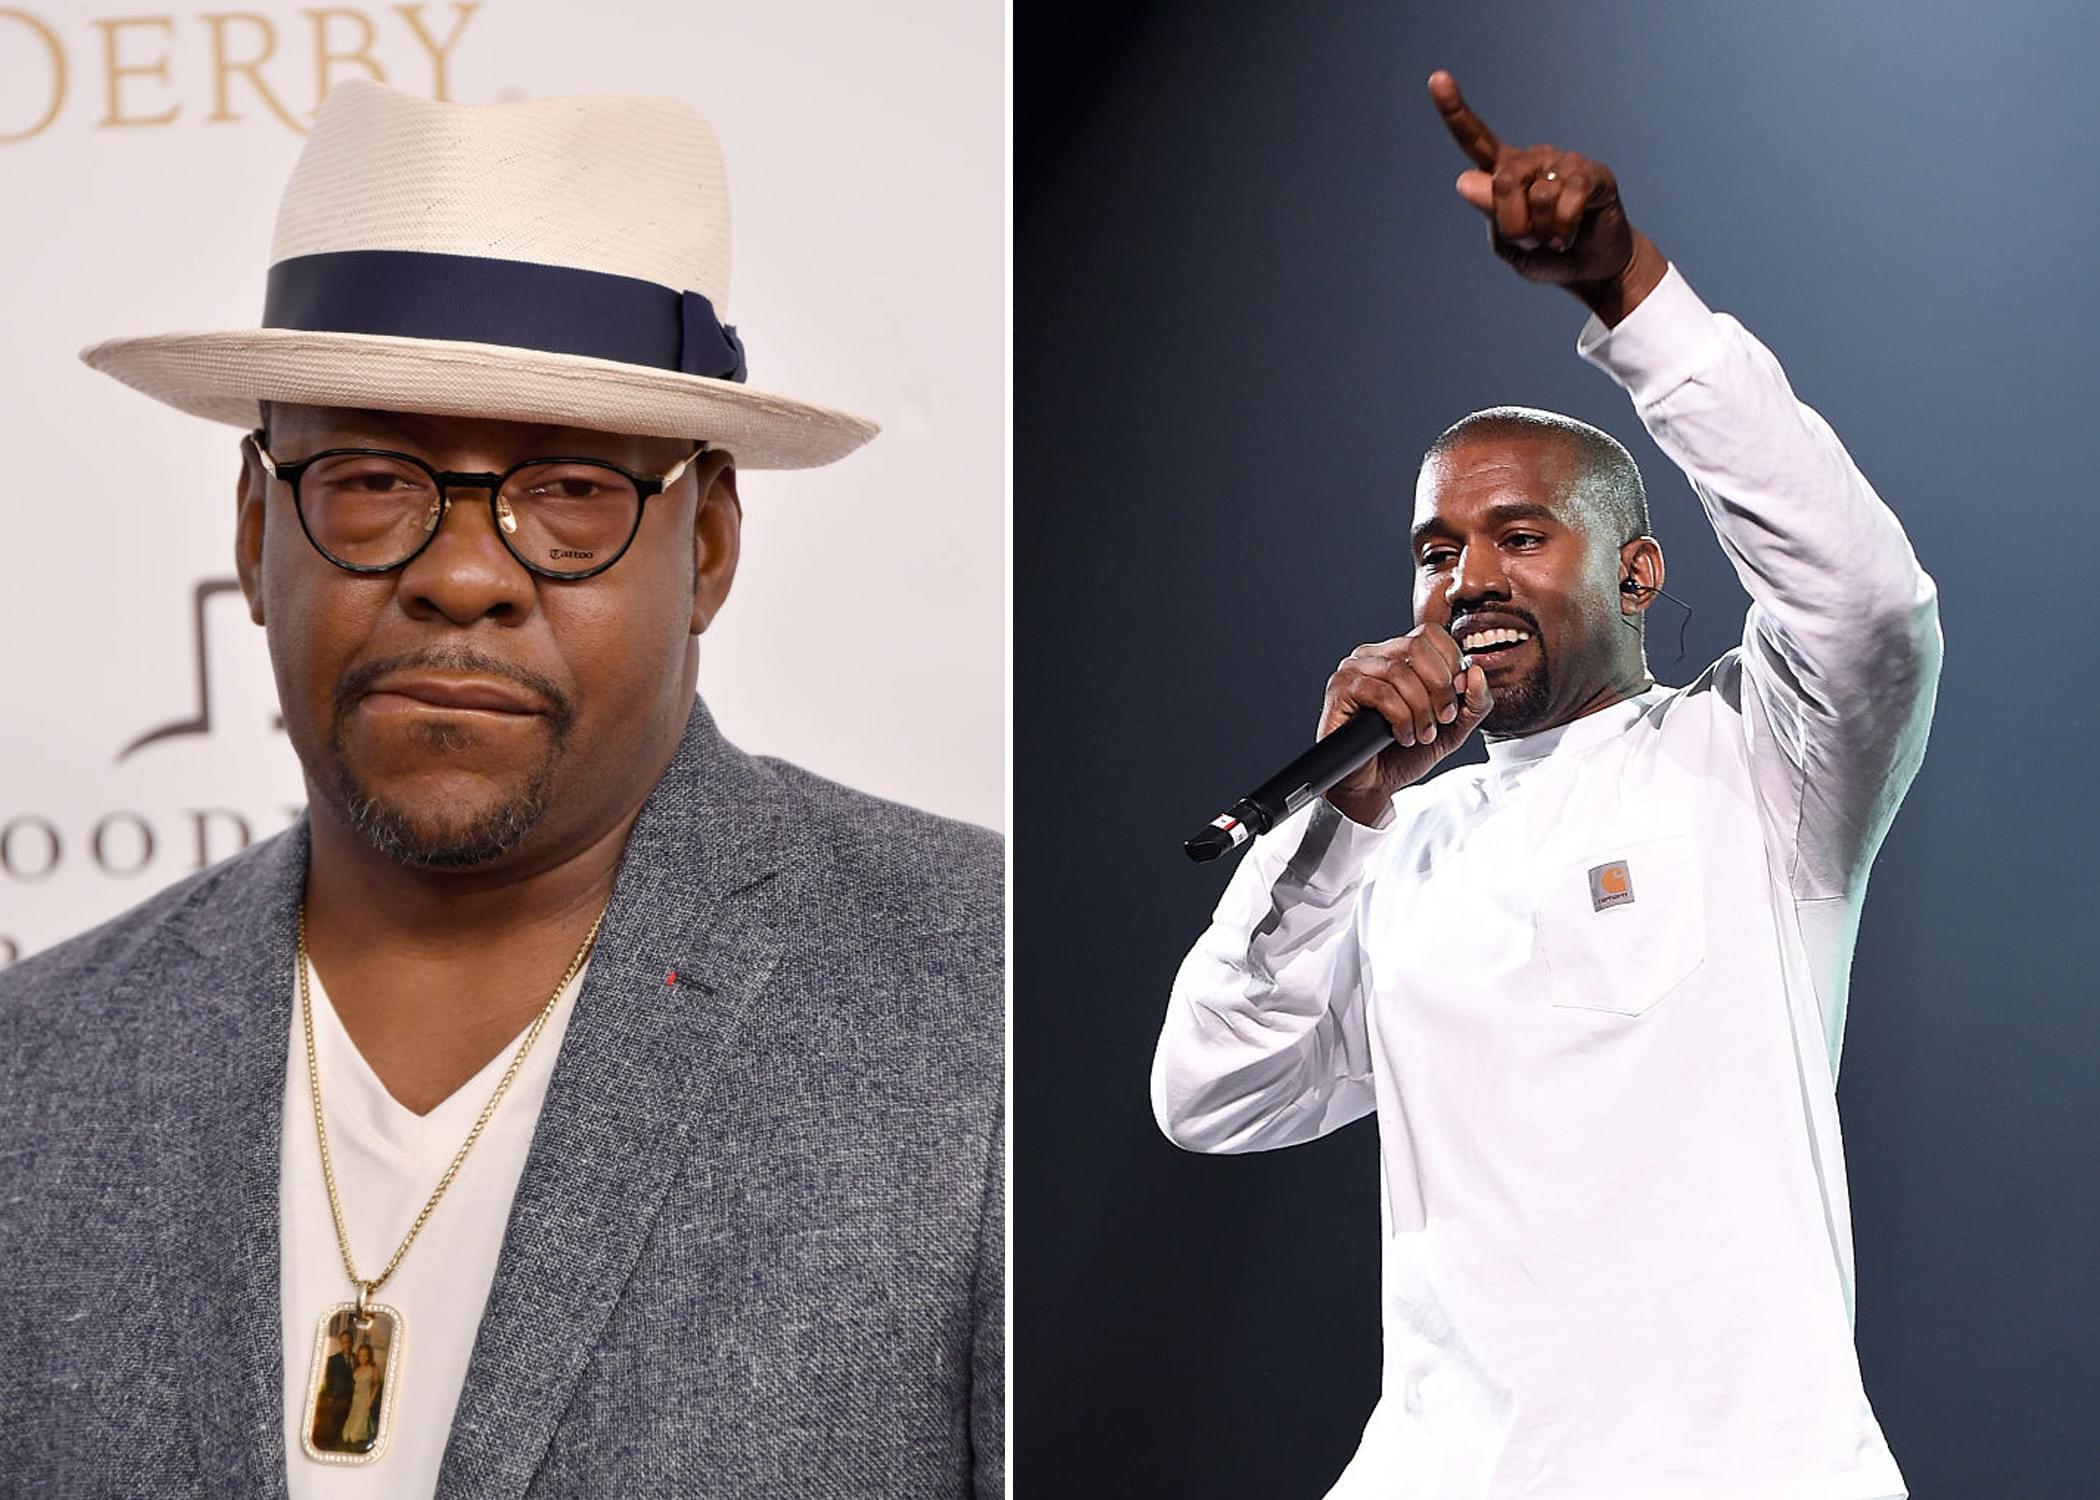 Bobby Brown Feels Kanye Should Be Slapped For “Daytona” Album Cover